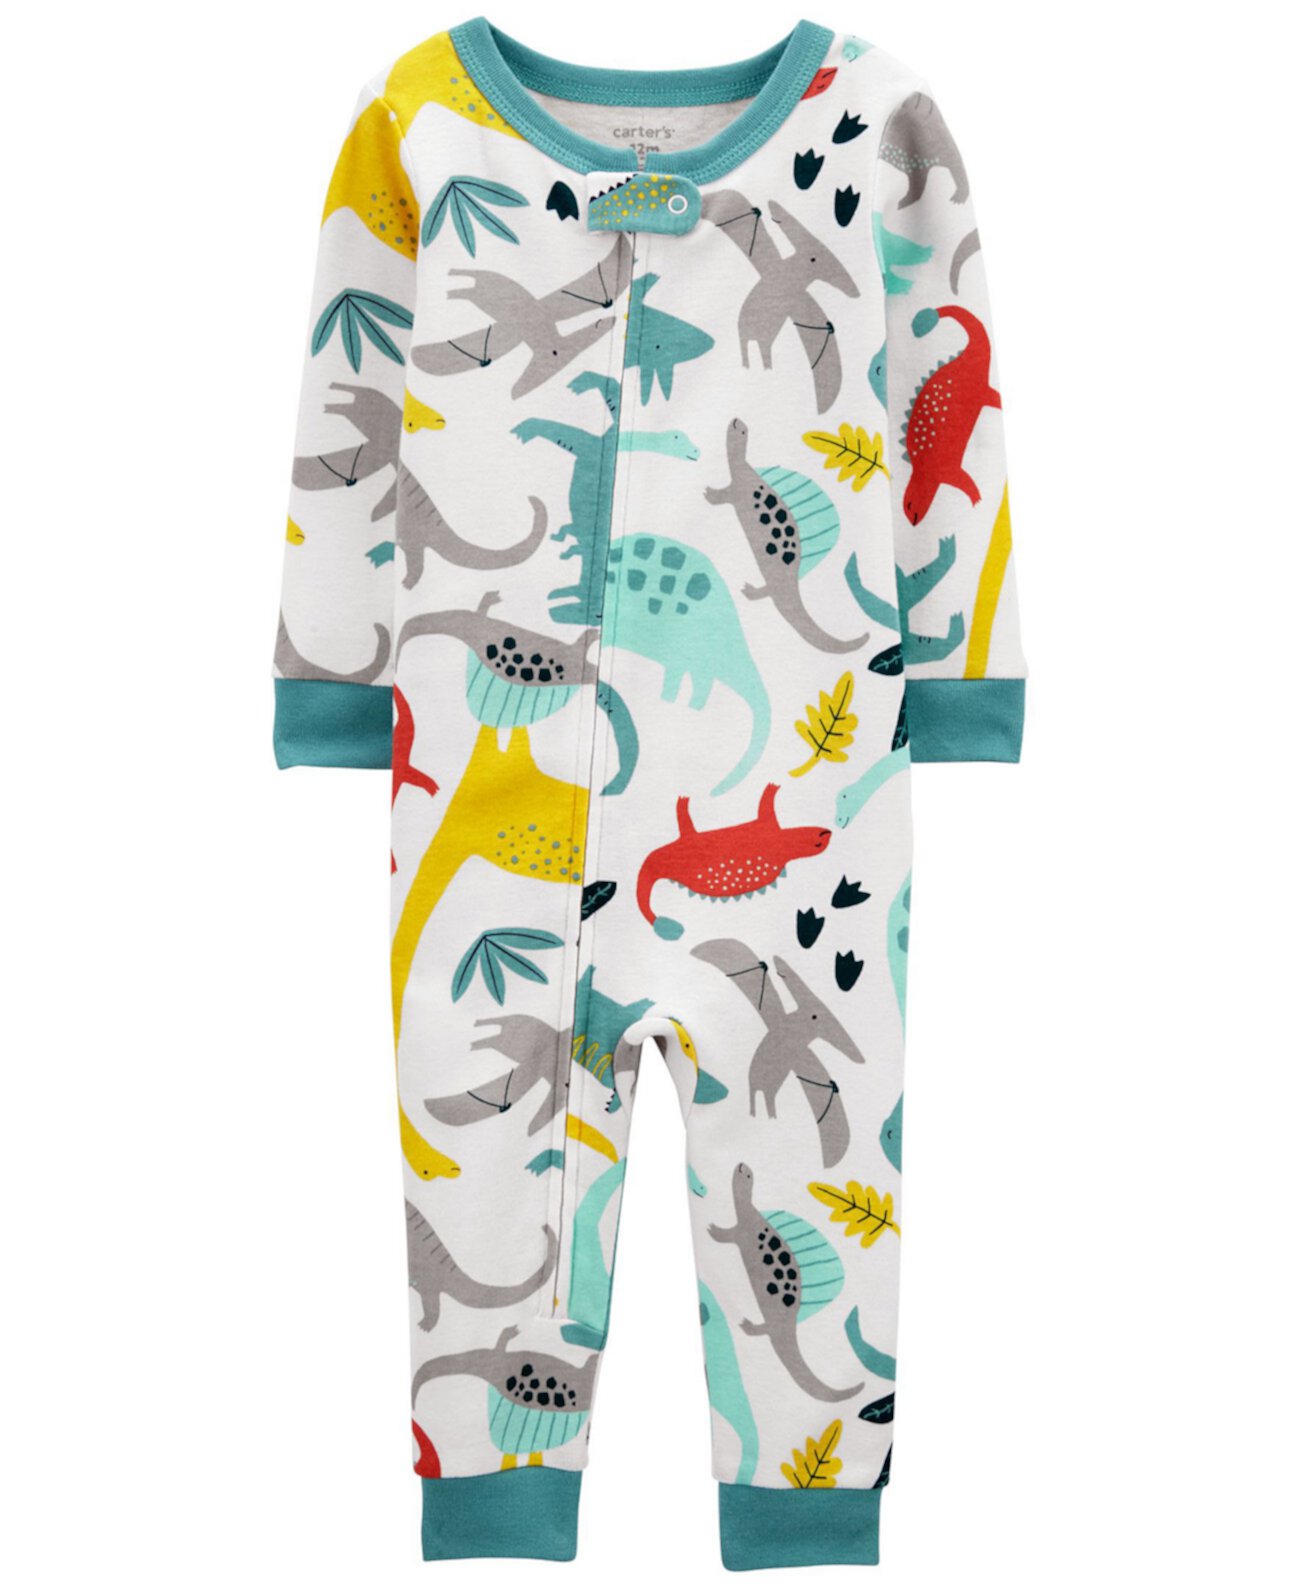 Пижамный комплект с динозавром для маленьких мальчиков Carter's